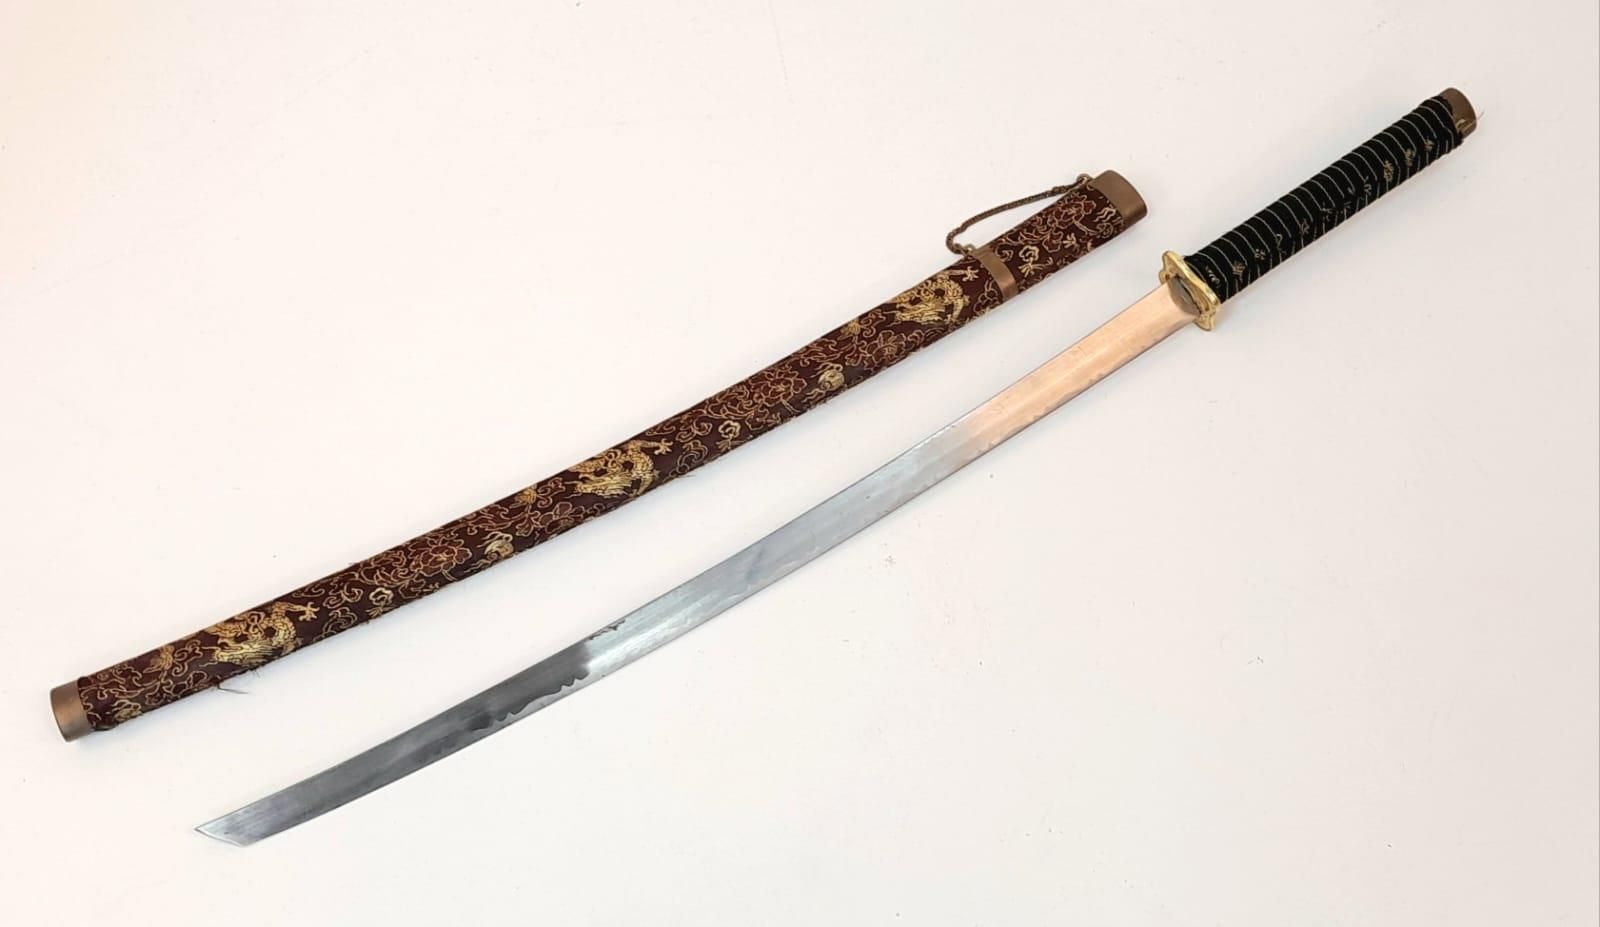 Null 一把带装饰织物剑鞘的仿制日本片刀。全长 - 93 厘米。剑身长度 - 64 厘米。